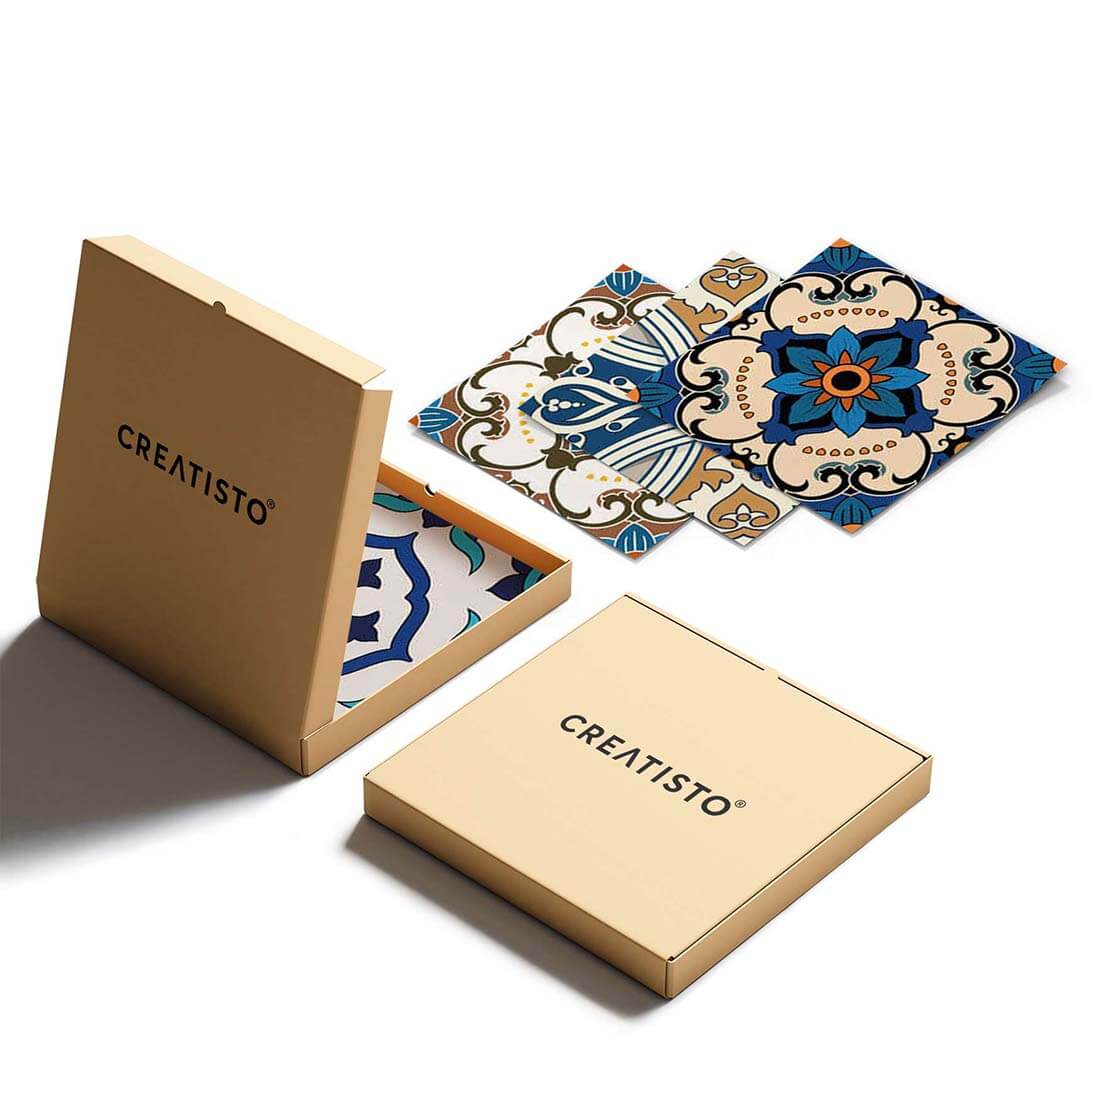 Klebefliesen Lisboa Azulejos - Verpackung - creatisto pds2